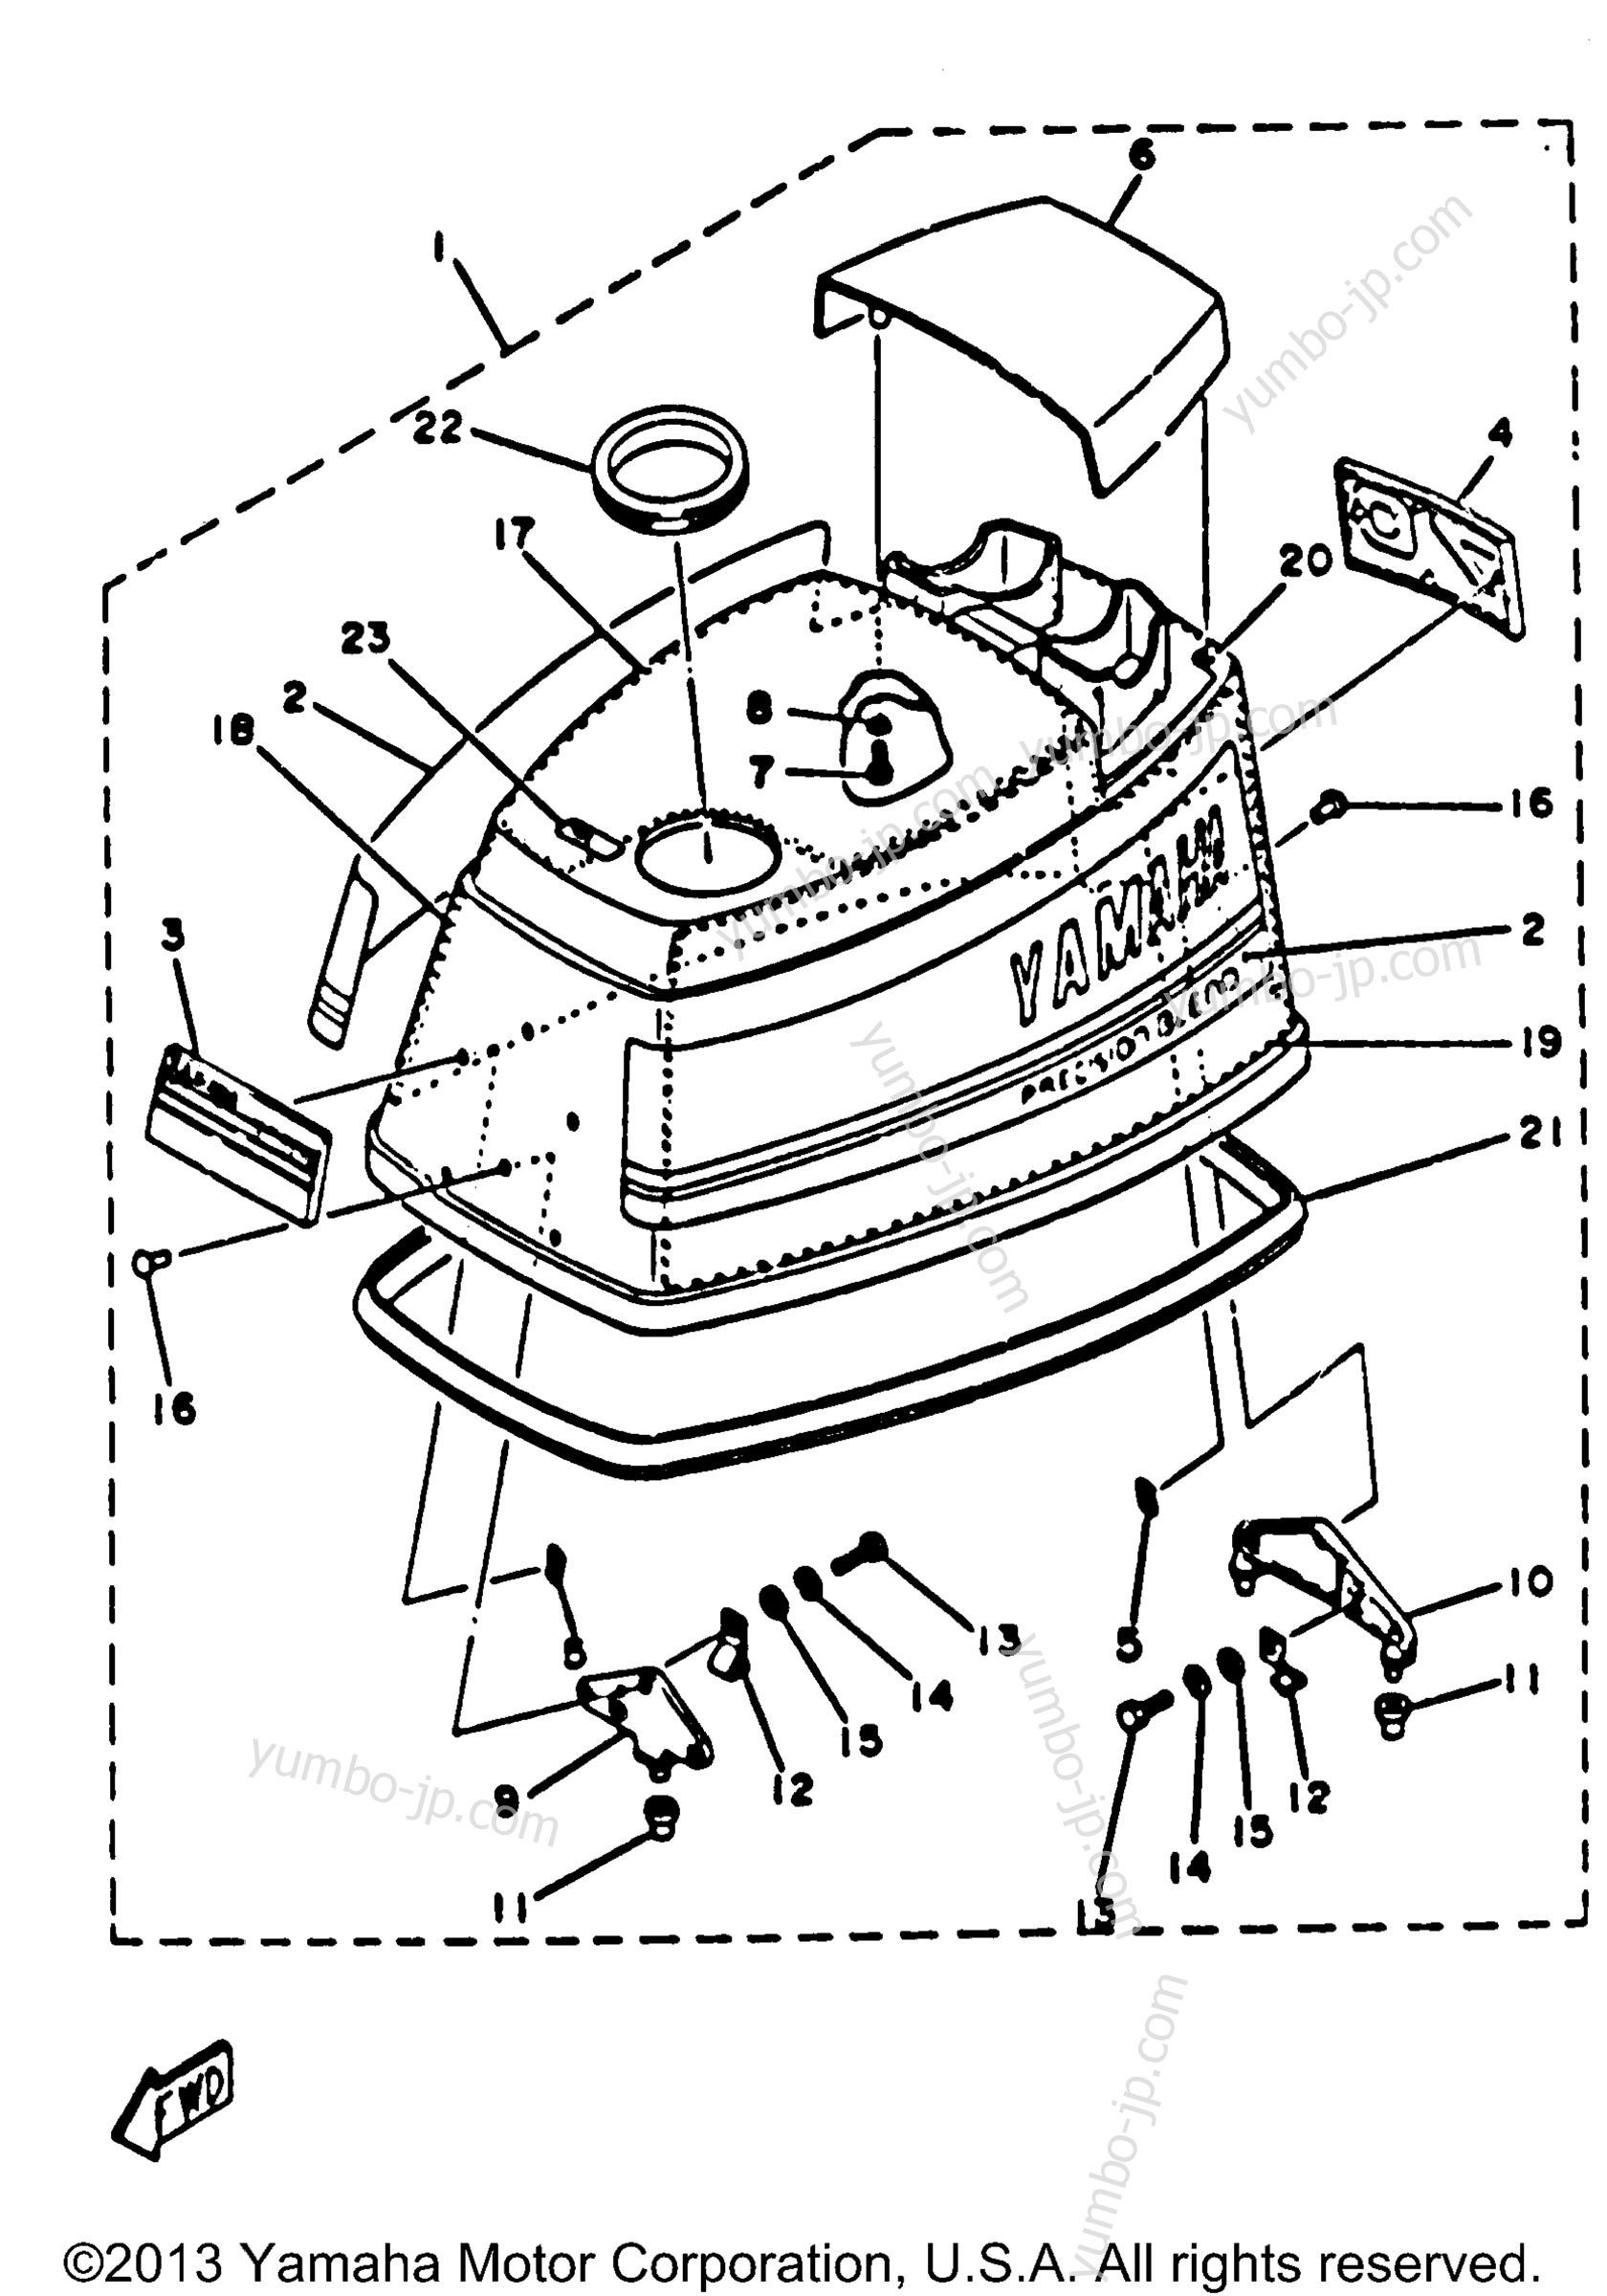 Top Cowling для лодочных моторов YAMAHA 70ETLK 1985 г.